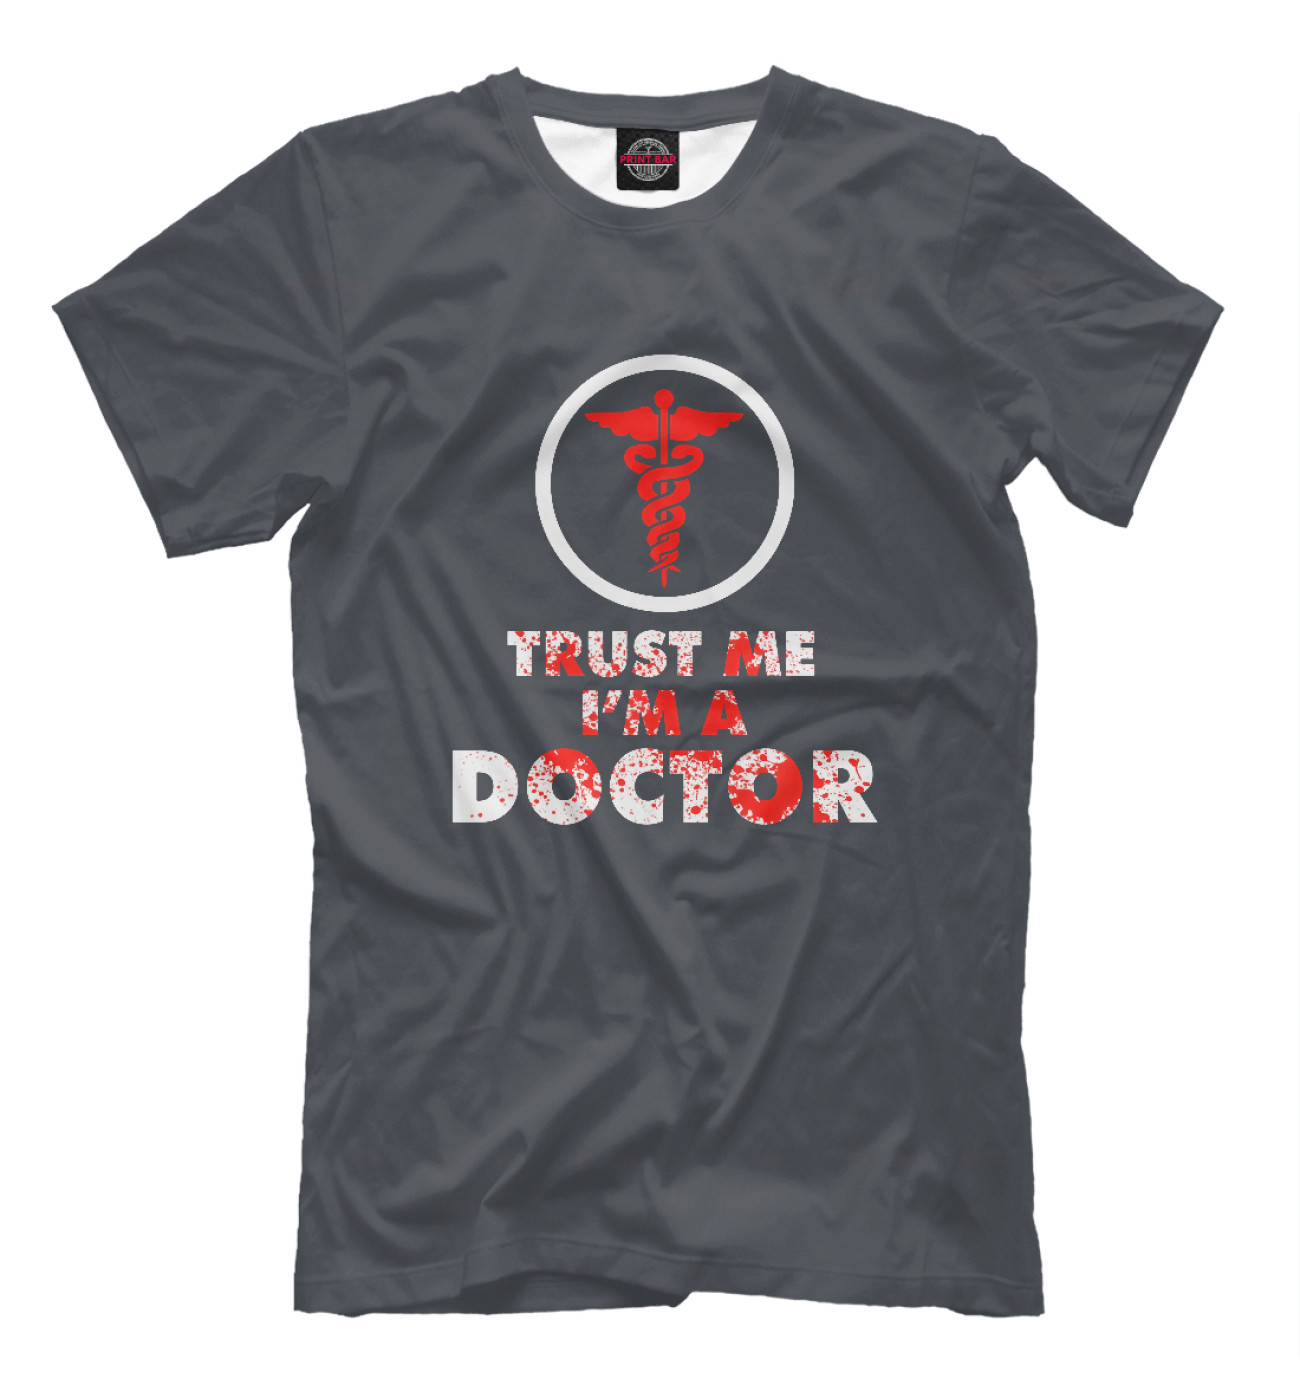 Мужская Футболка Trust Me Im A Doctor, артикул: VRC-100989-fut-2